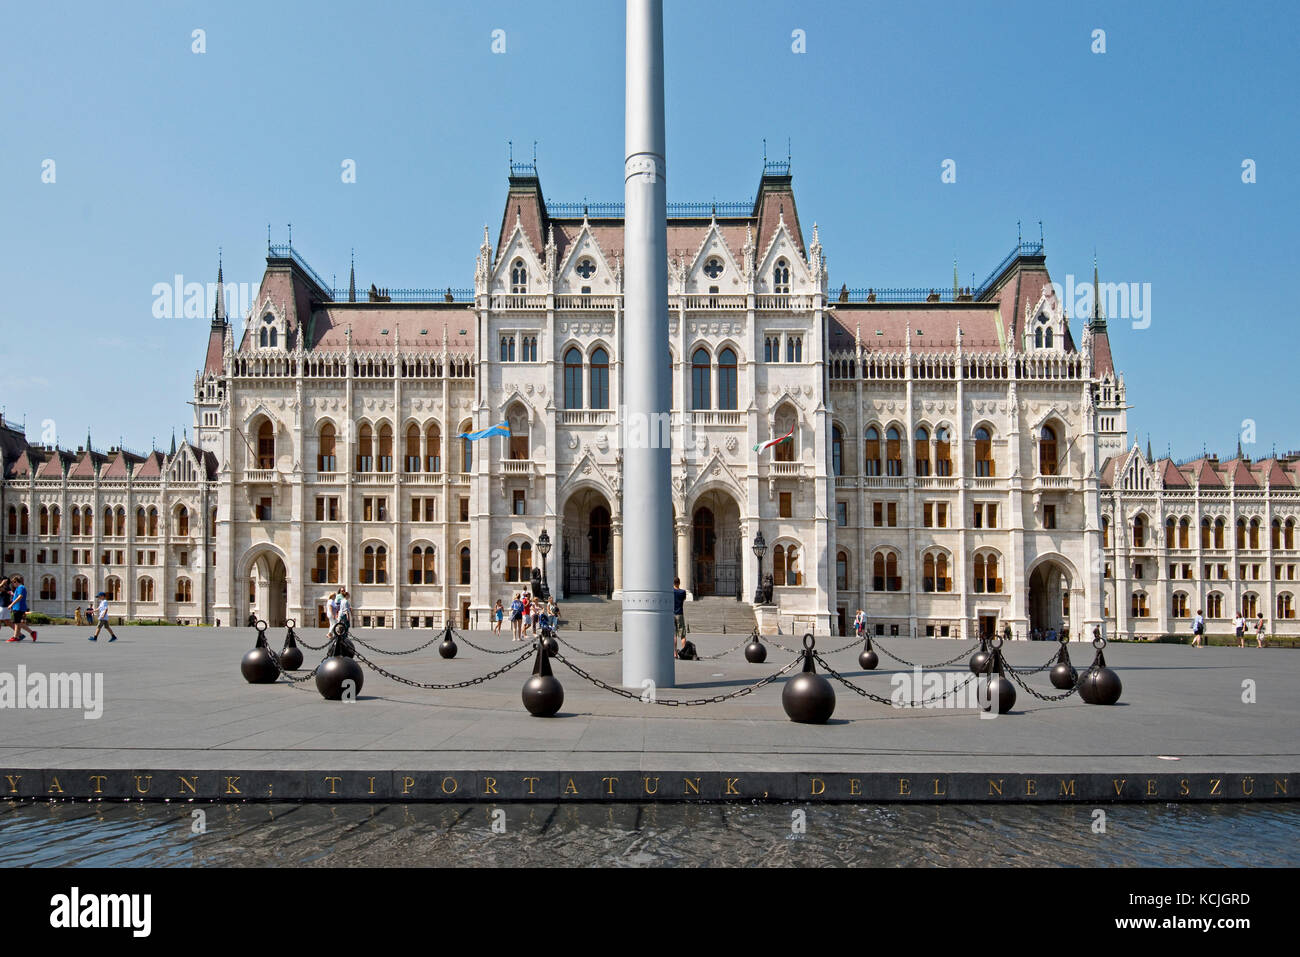 L'ingresso principale ufficiale al Palazzo del Parlamento Ungherese in Piazza Kossuth Lajos a Budapest in una giornata soleggiata con cielo blu. Foto Stock